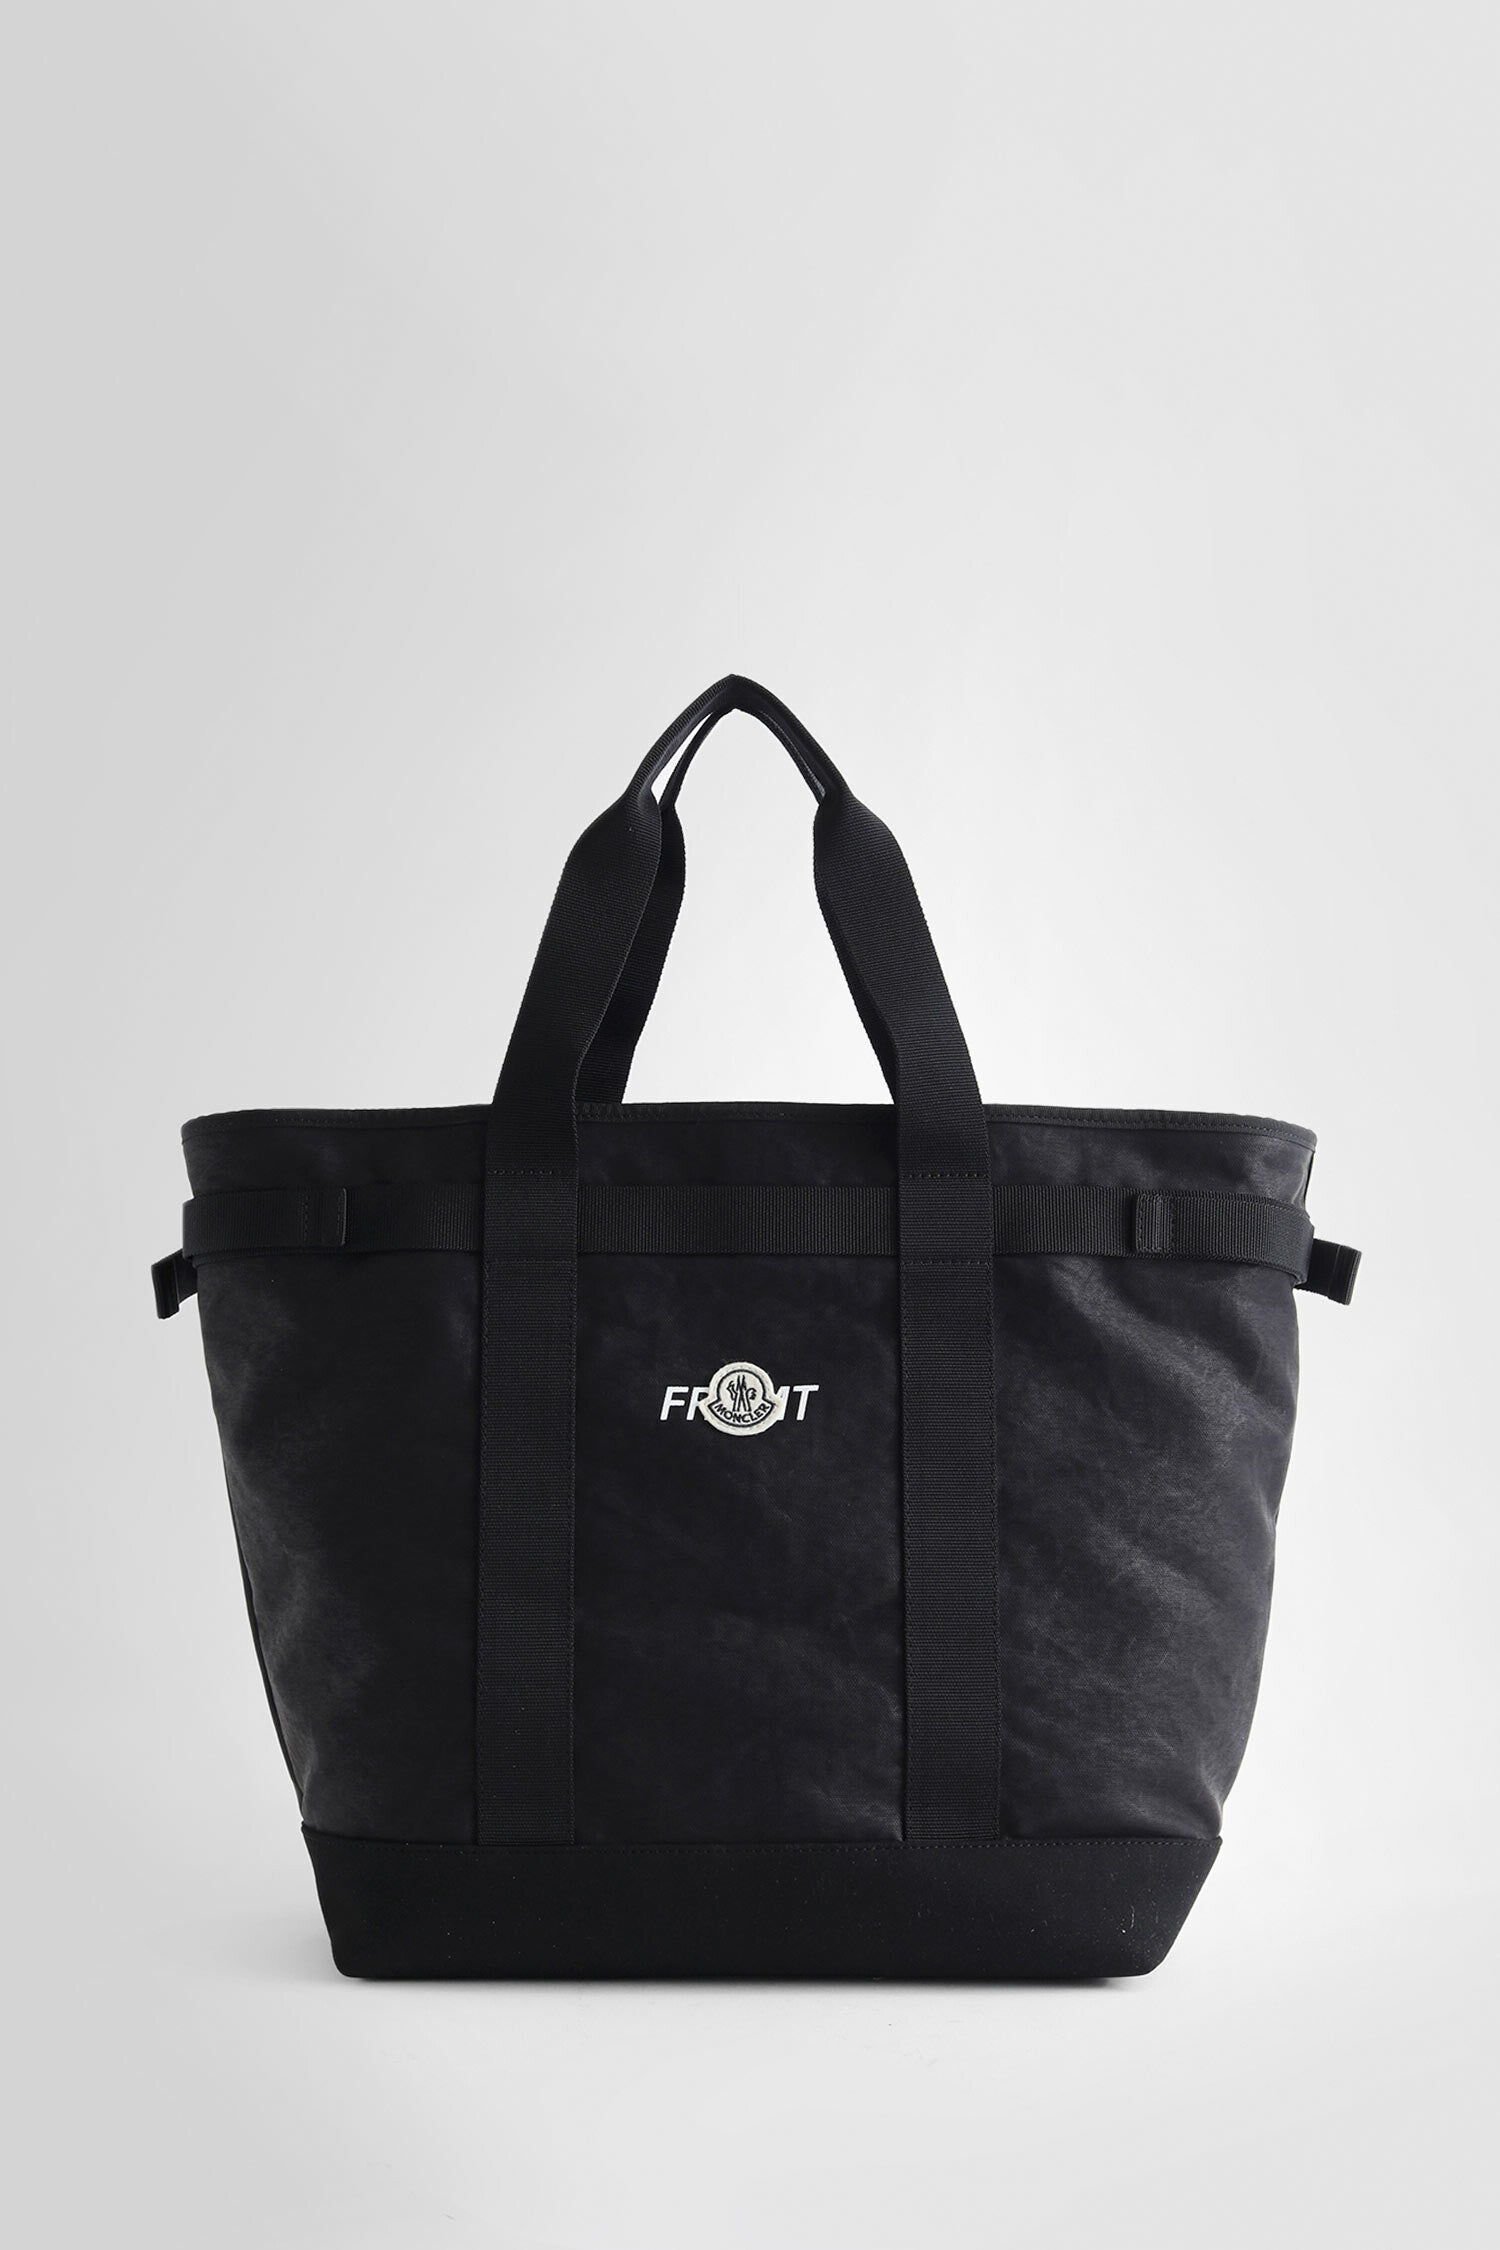 Nike x Stussy Tote Bag Black